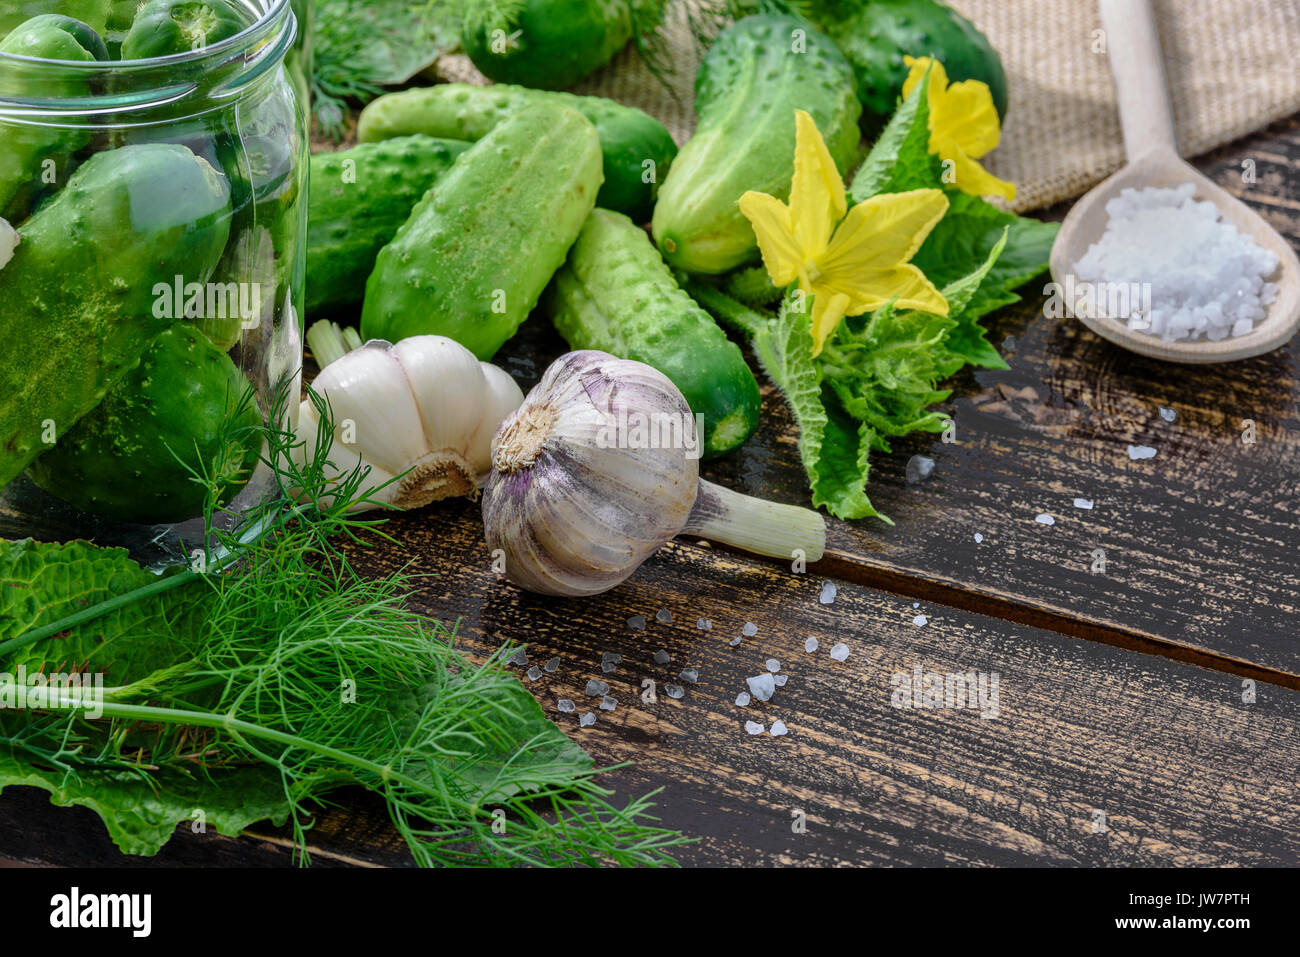 Das Konzept der Bestandteile von hausgemachten Marmeladen - Gläser Salzgurken auf einen hölzernen Tisch neben raw Grün Masse Gurken, Dill, Salz, gar Stockfoto